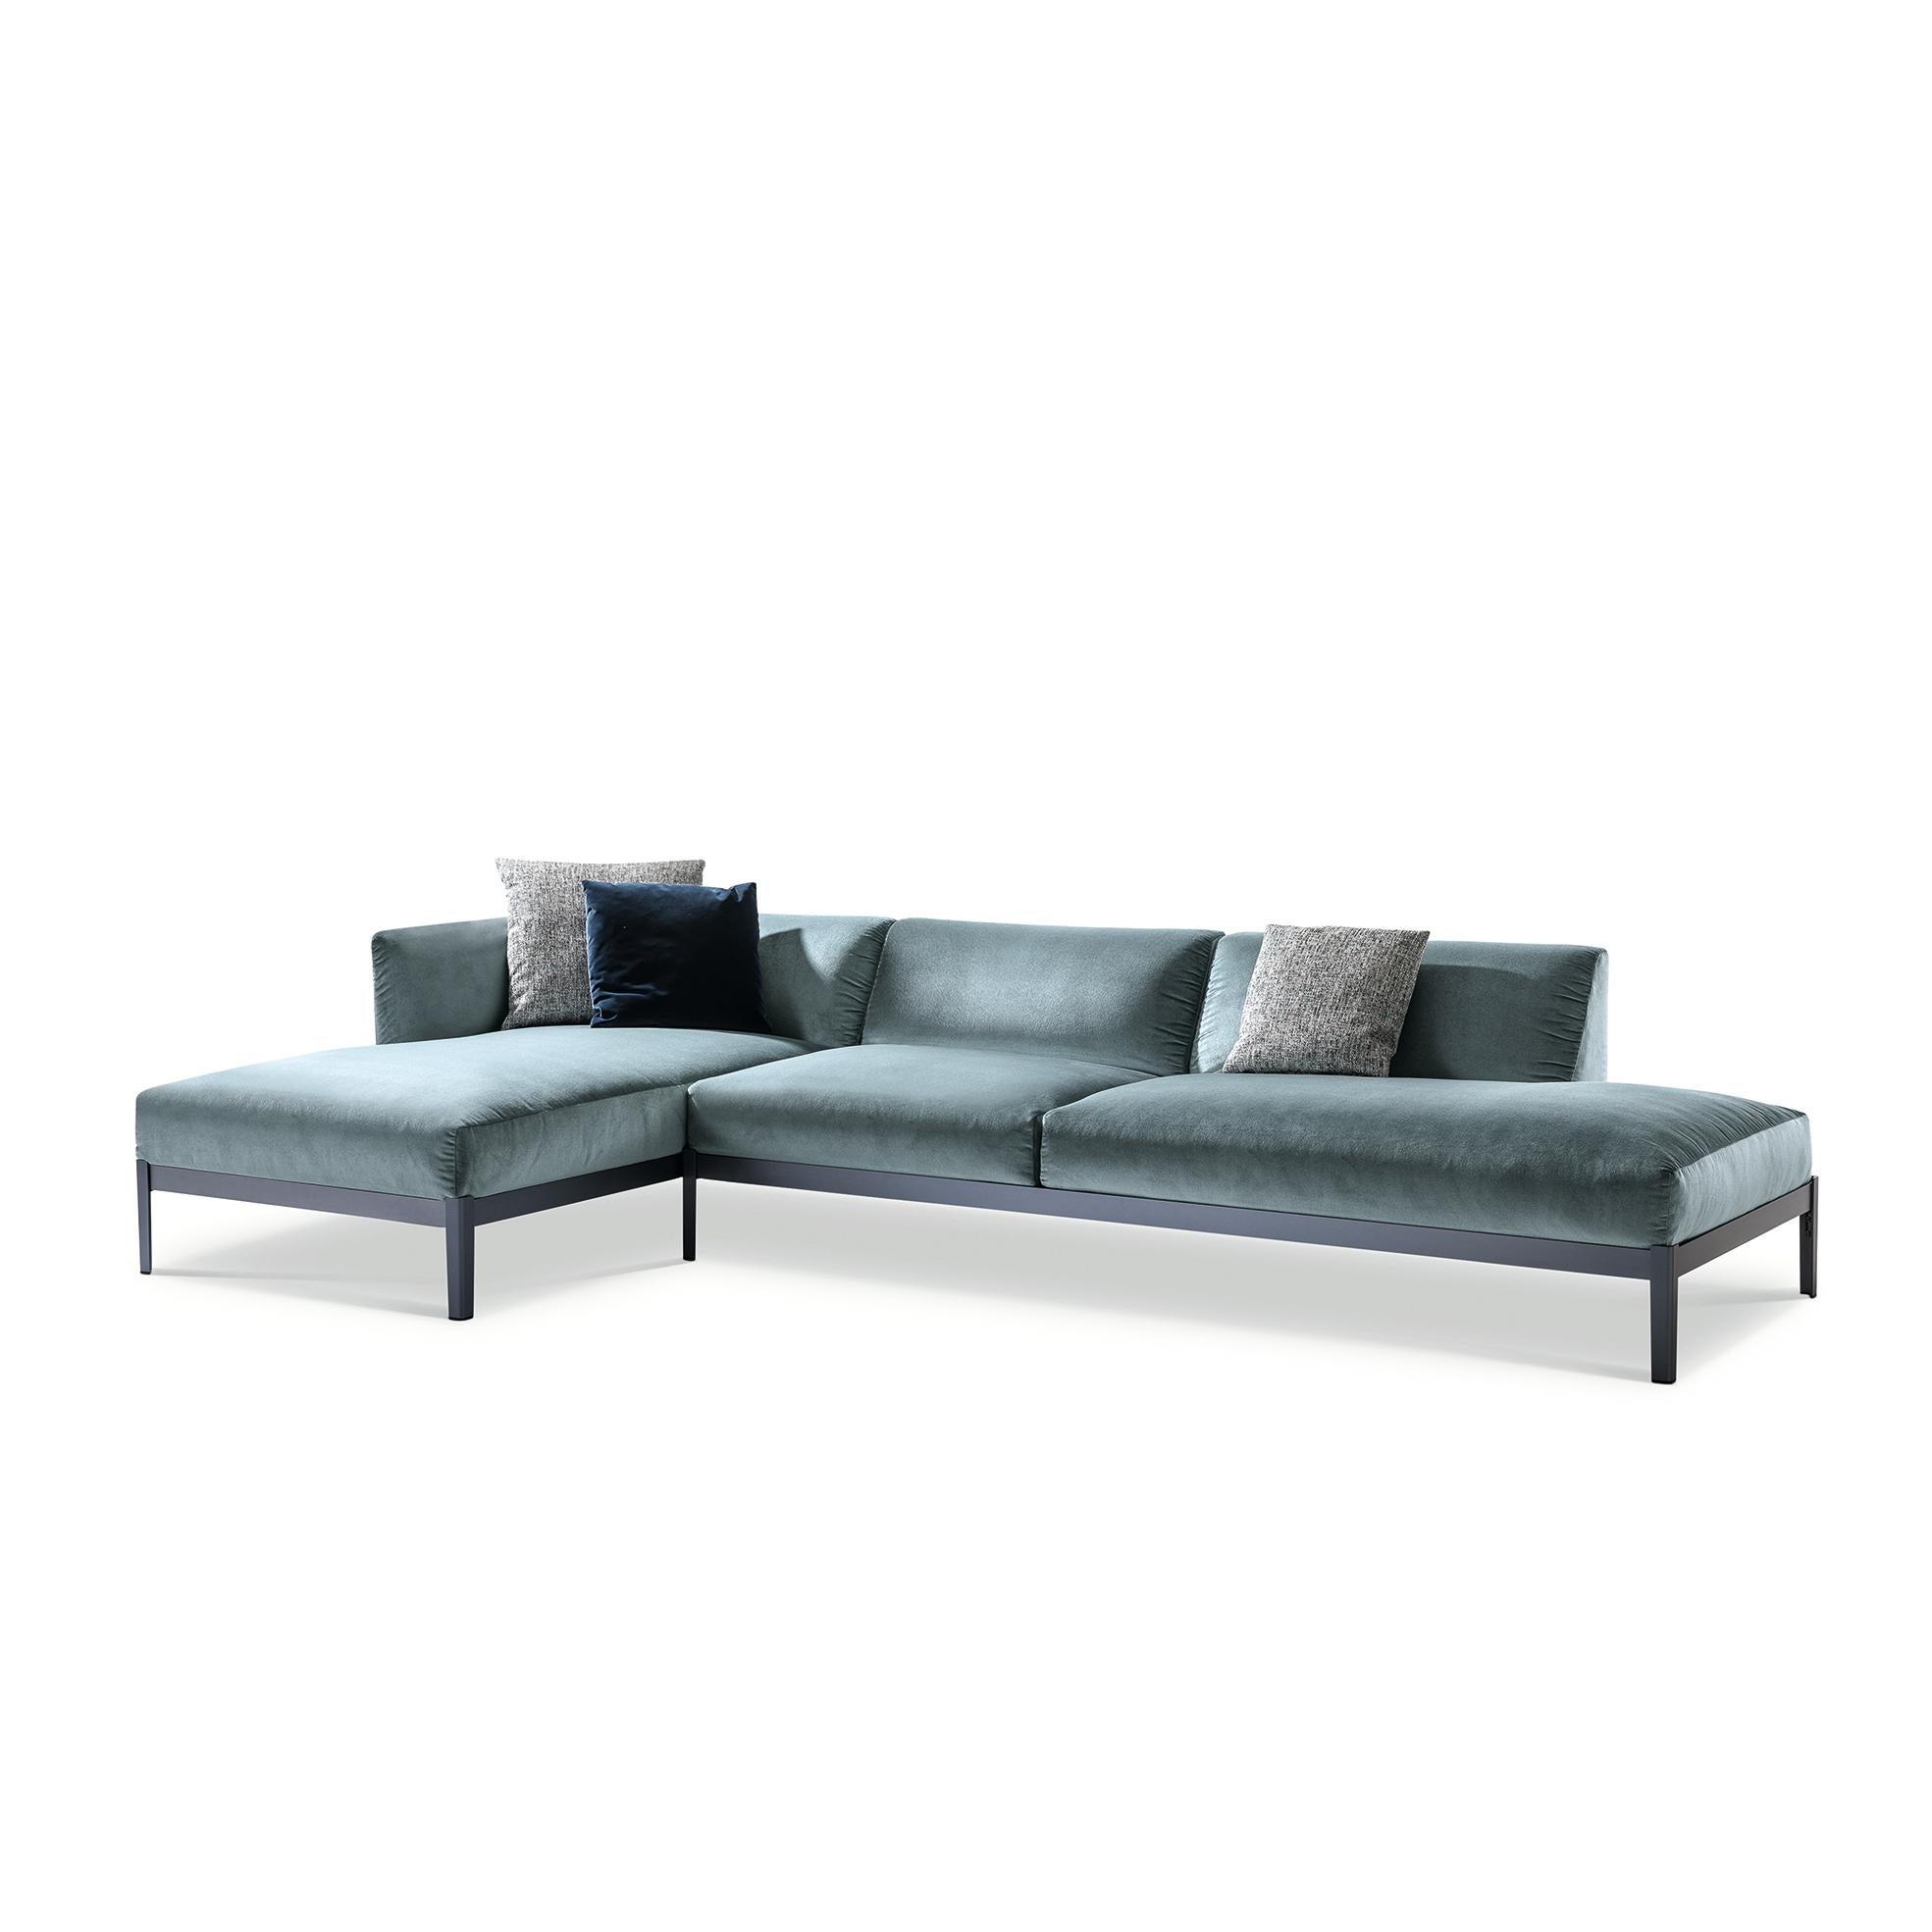 Italian Ronan & Erwan Bourroullec 'Cotone' Sofa, Aluminum and Fabric by Cassina